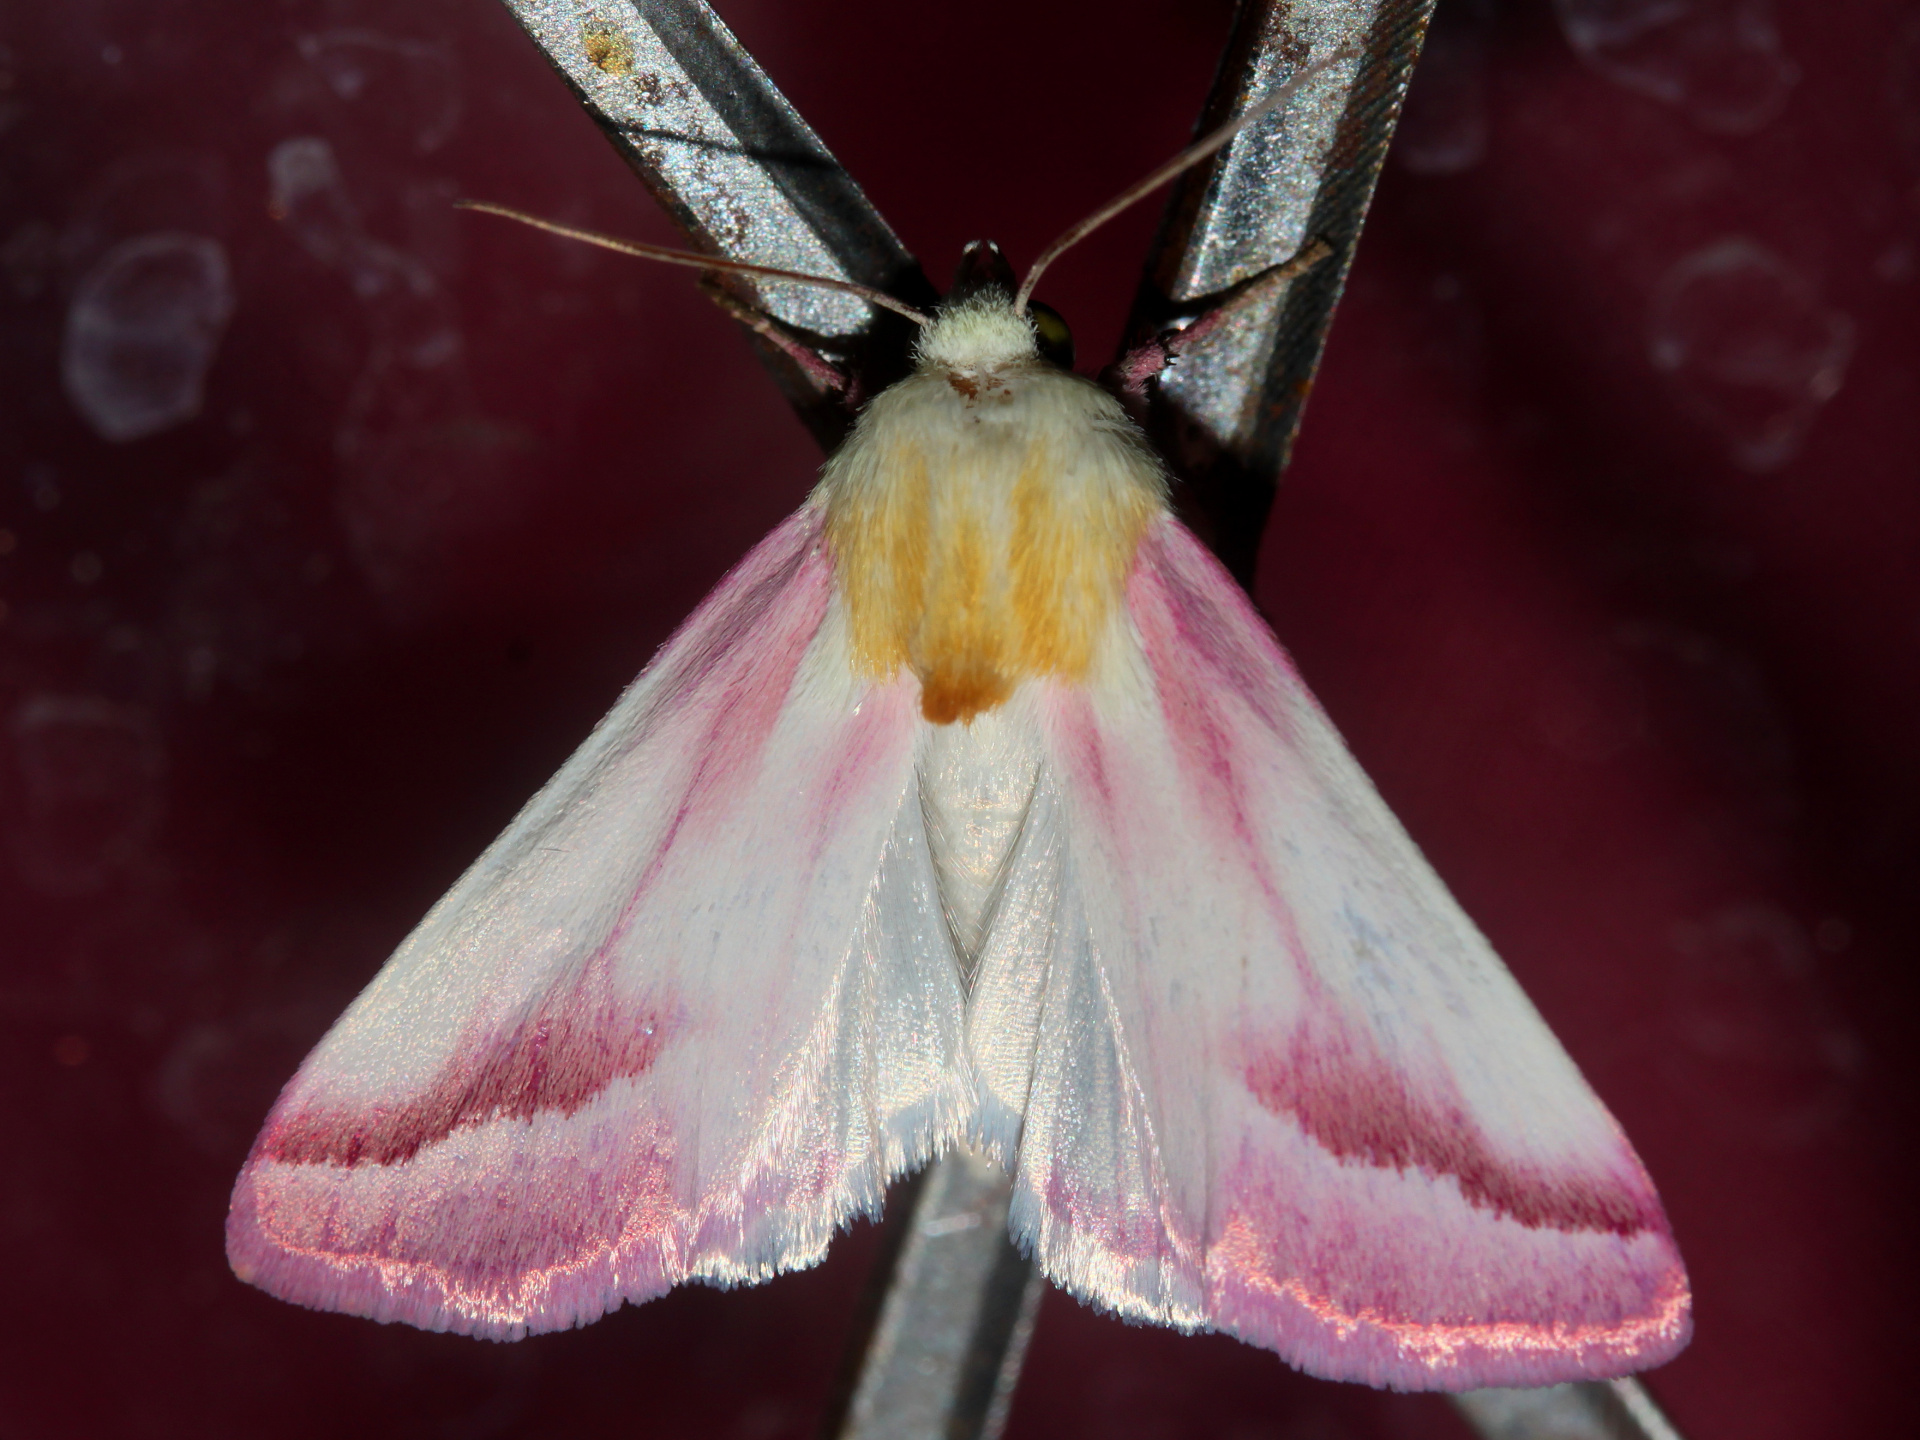 Schinia gaurae (Podróże » USA: Drogi nie obrane » Zwierzęta » Owady » Motyle i ćmy » Noctuidae)